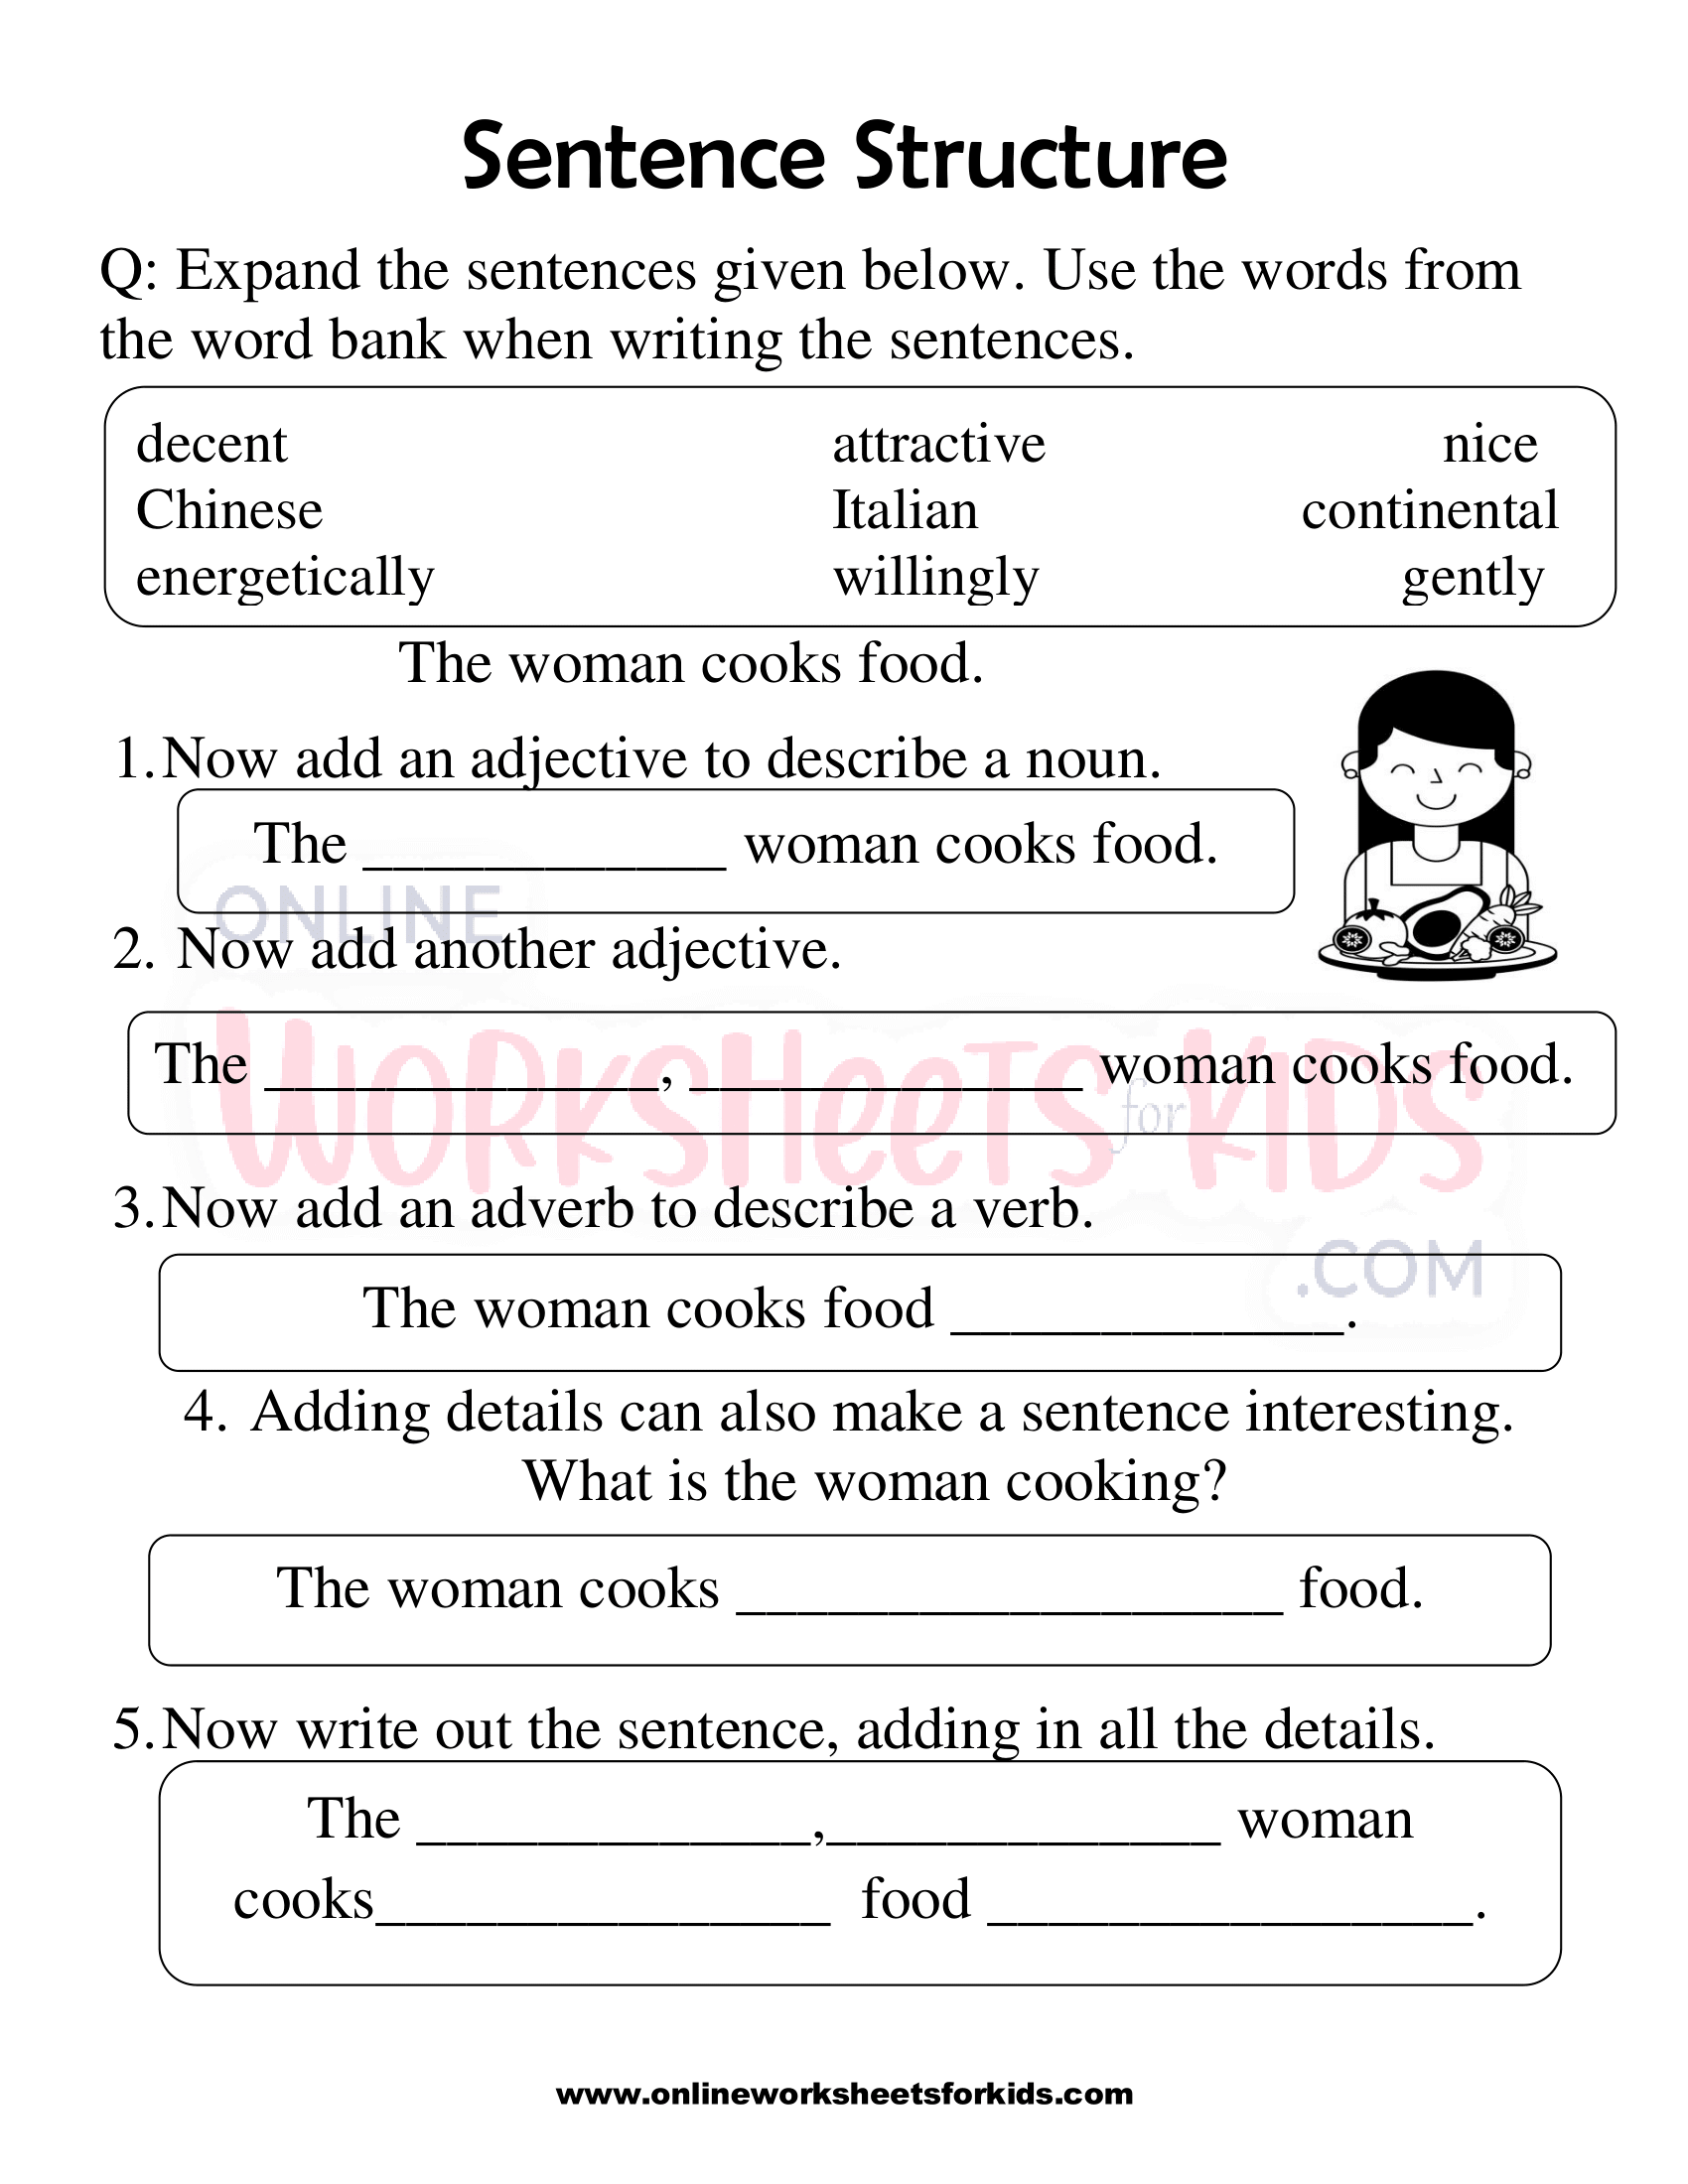 sentence-structure-worksheets-1st-grade-8